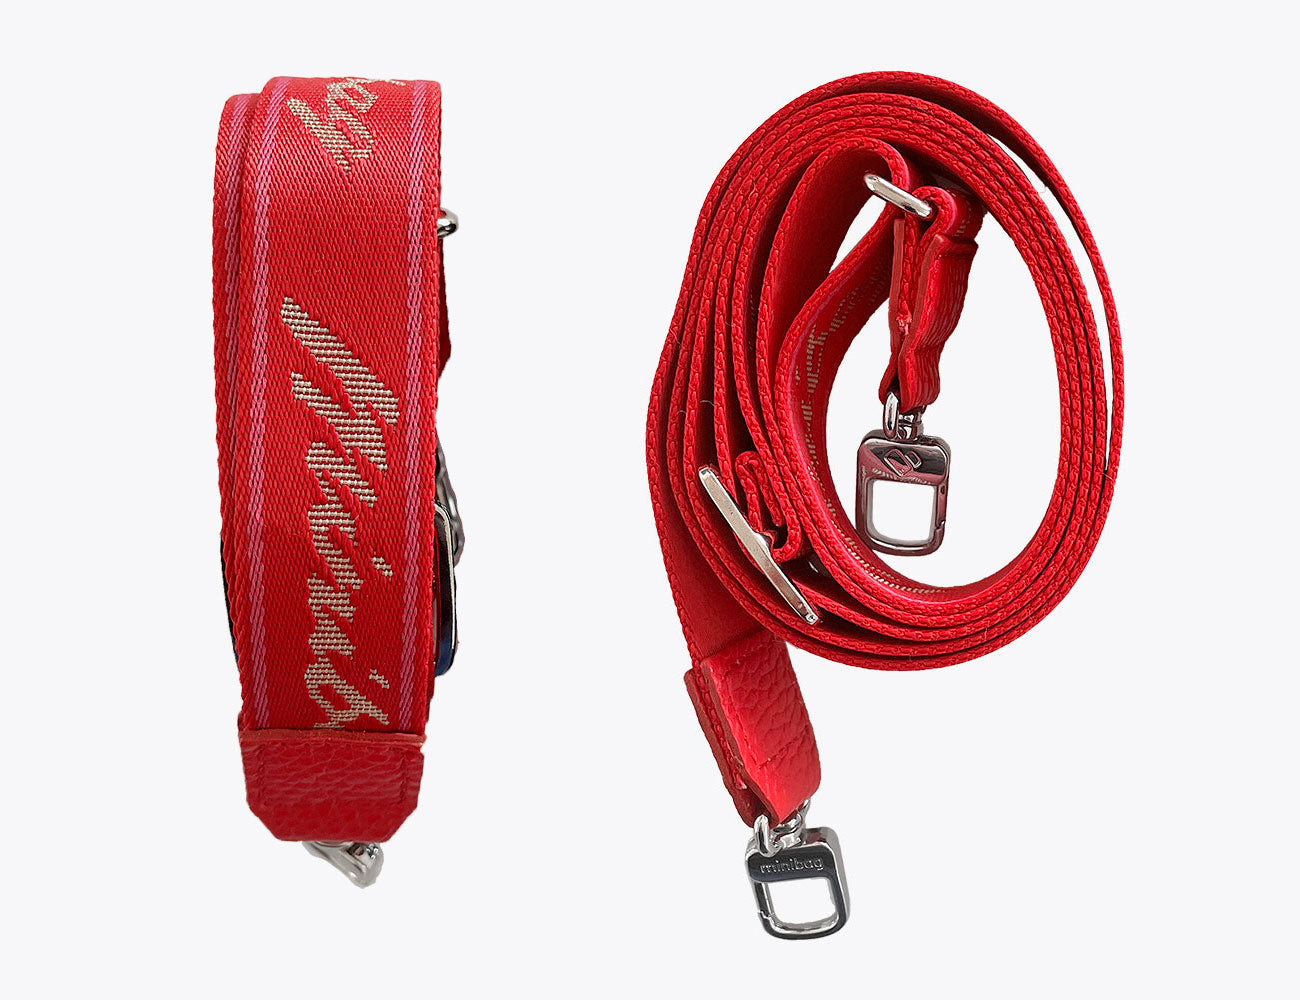 Minibag textile strap red, Textilgurt minibag rot, Textilgurt für Taschen, minibag Schriftbezug